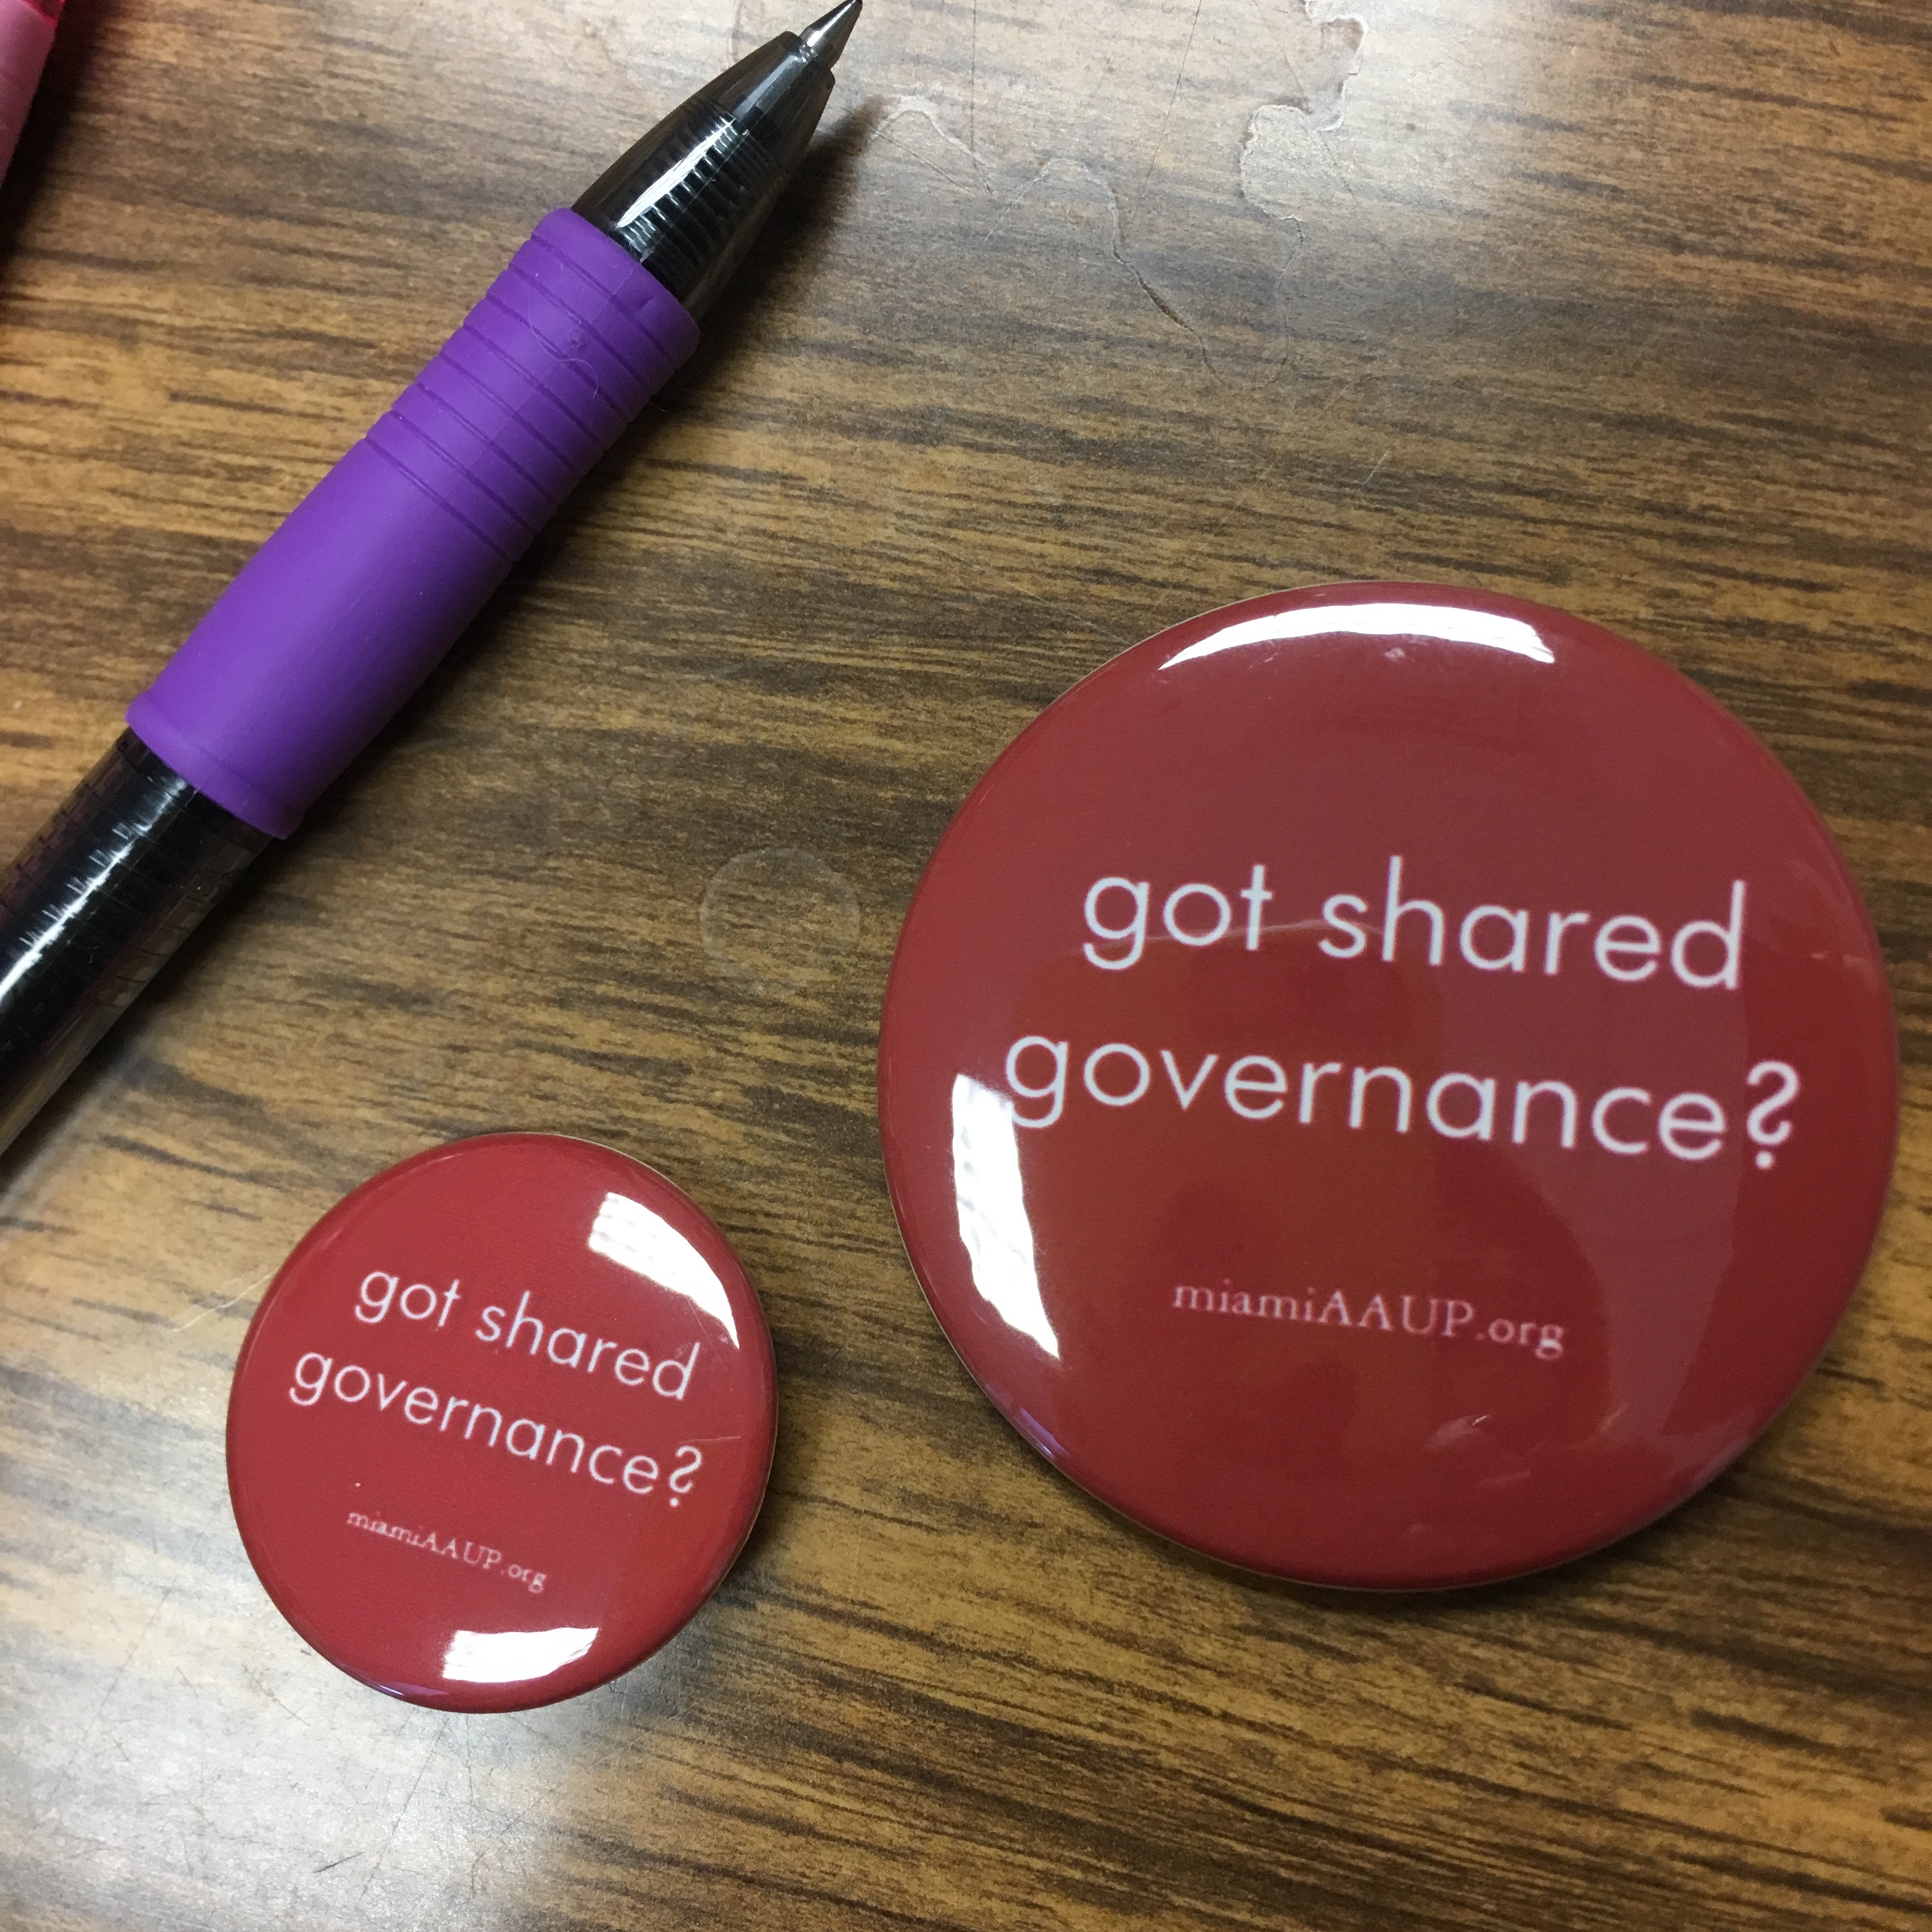 got shared governance?